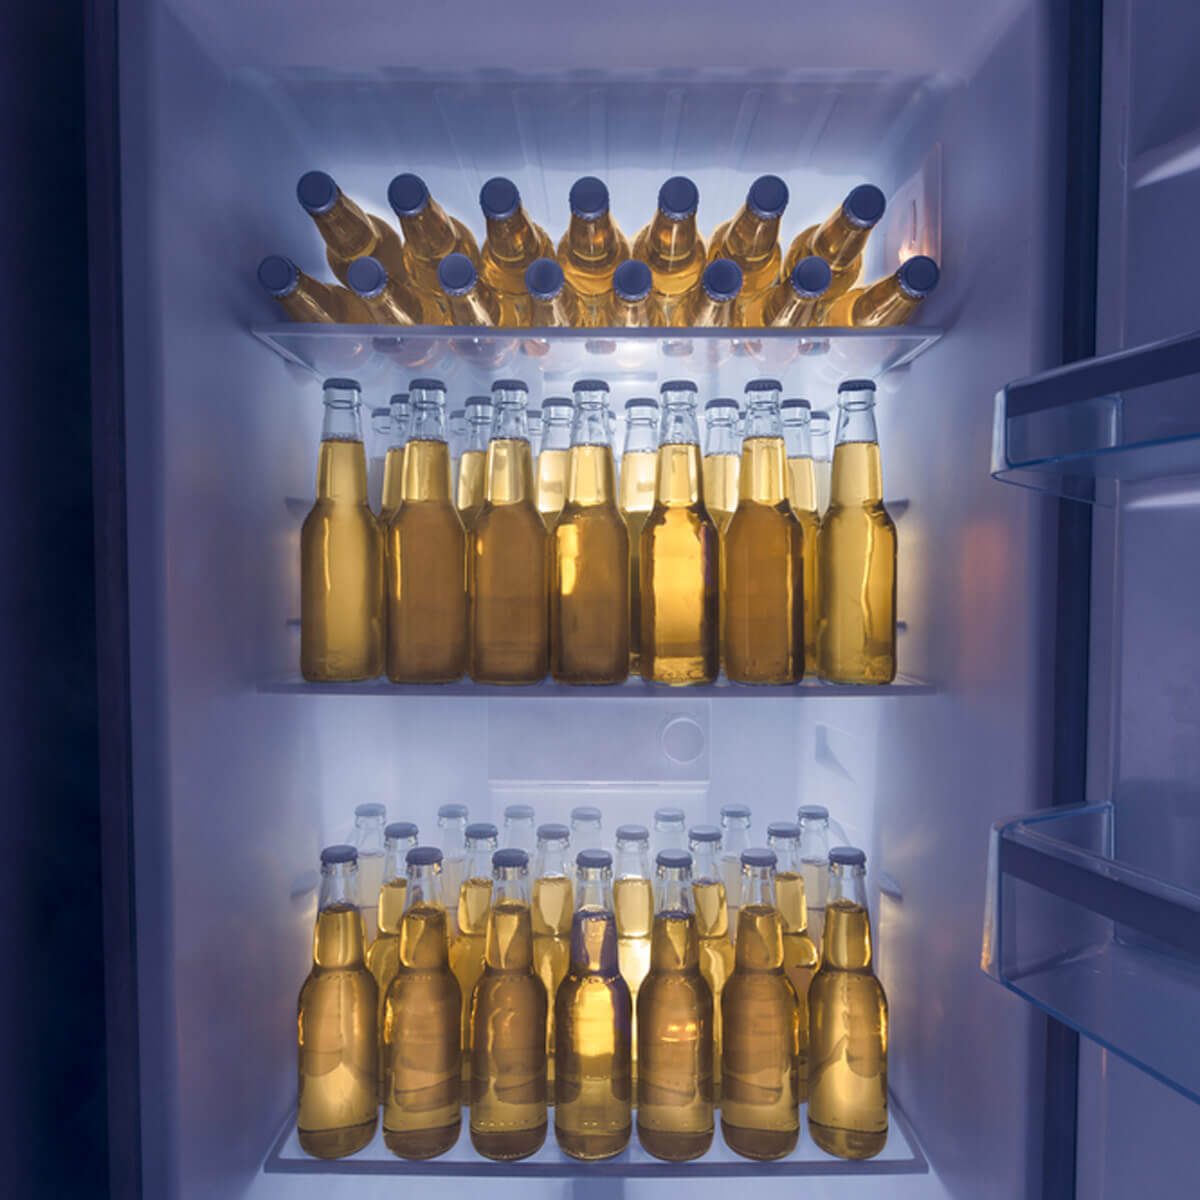 shutterstock_155196506-1 beer fridge